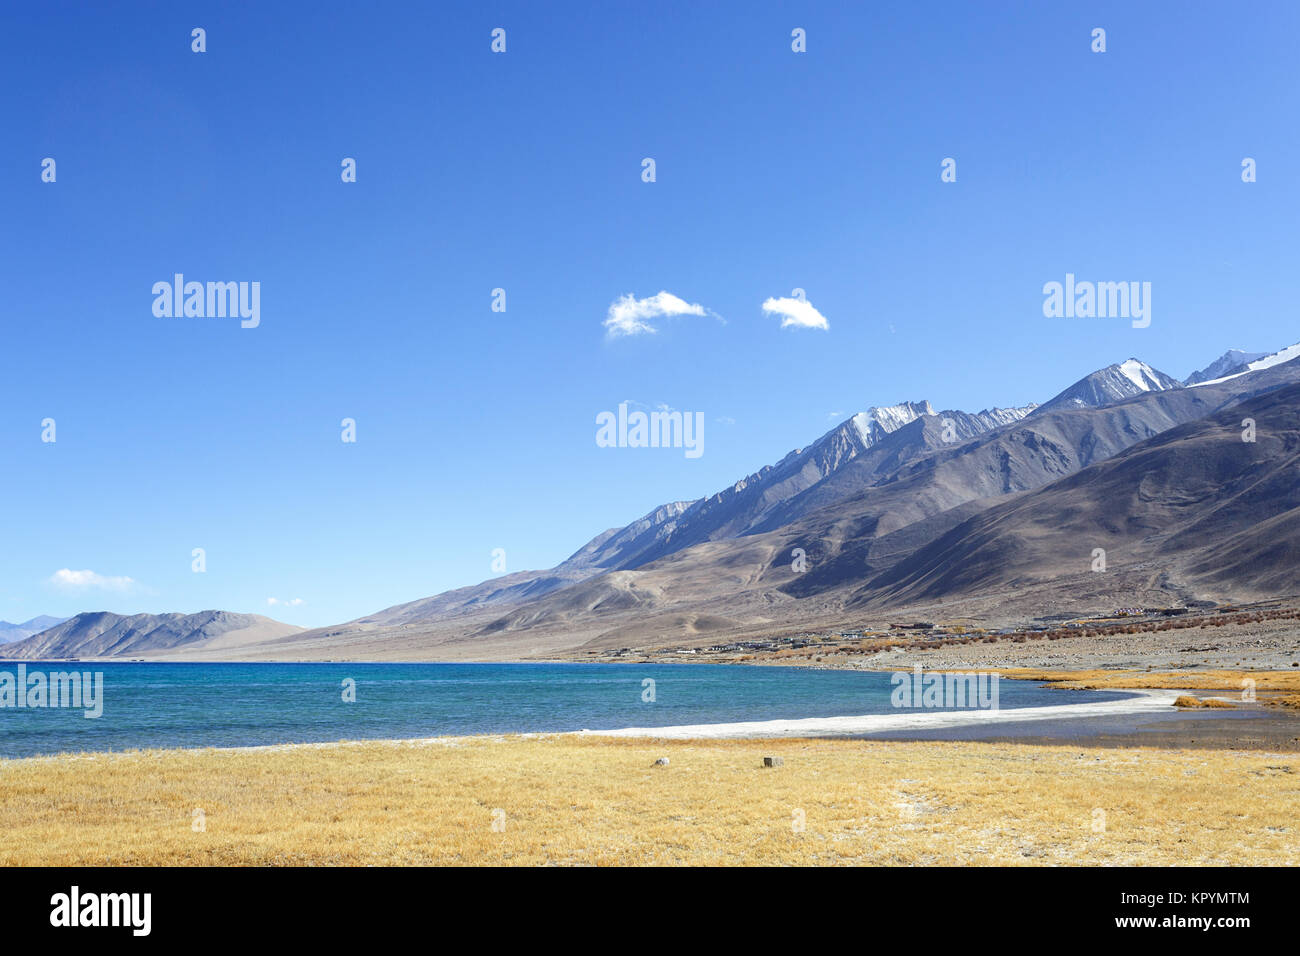 The beautiful scenery of the Pangong Tso lake and its surroundings, Ladakh, Jammu and Kashmir, India. Stock Photo